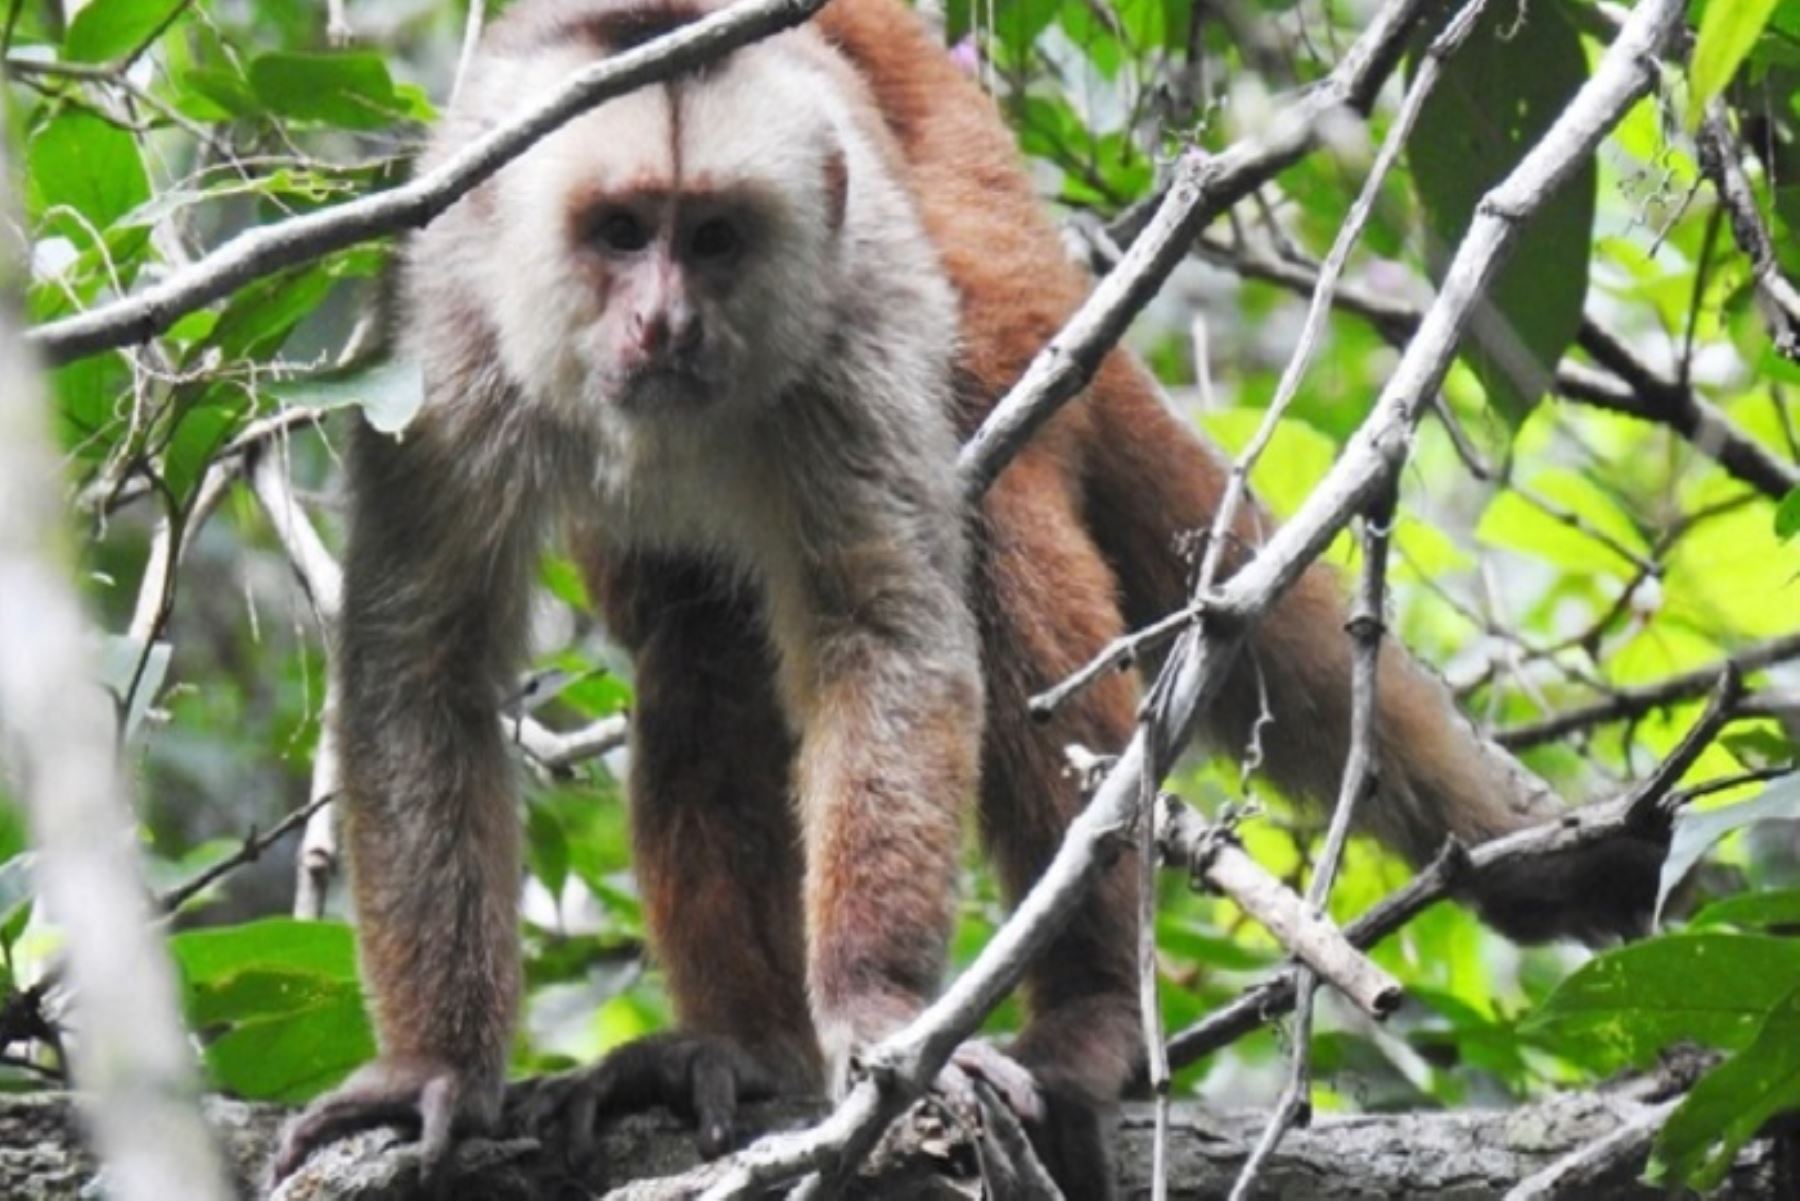 Además de la caza y el tráfico de fauna silvestre, la principal amenaza para el mono machín de Tumbes es la fragmentación de los bosques generada por la pérdida de su hábitat, principalmente en la zona de su distribución ubicada en Ecuador.